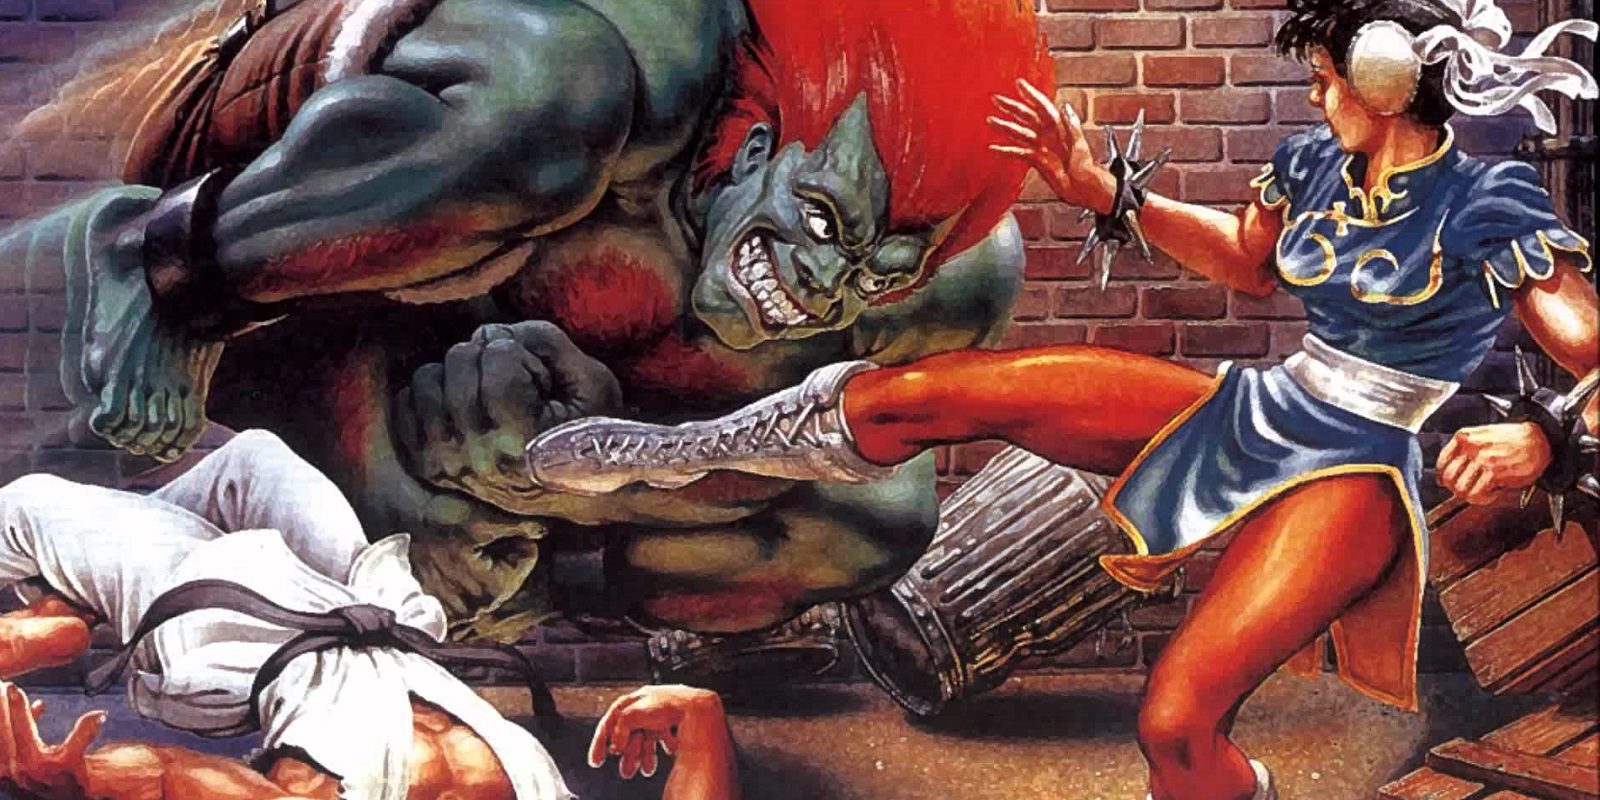 Un jugador descubre nuevos combos de 'Street Fighter II' después de 26 años